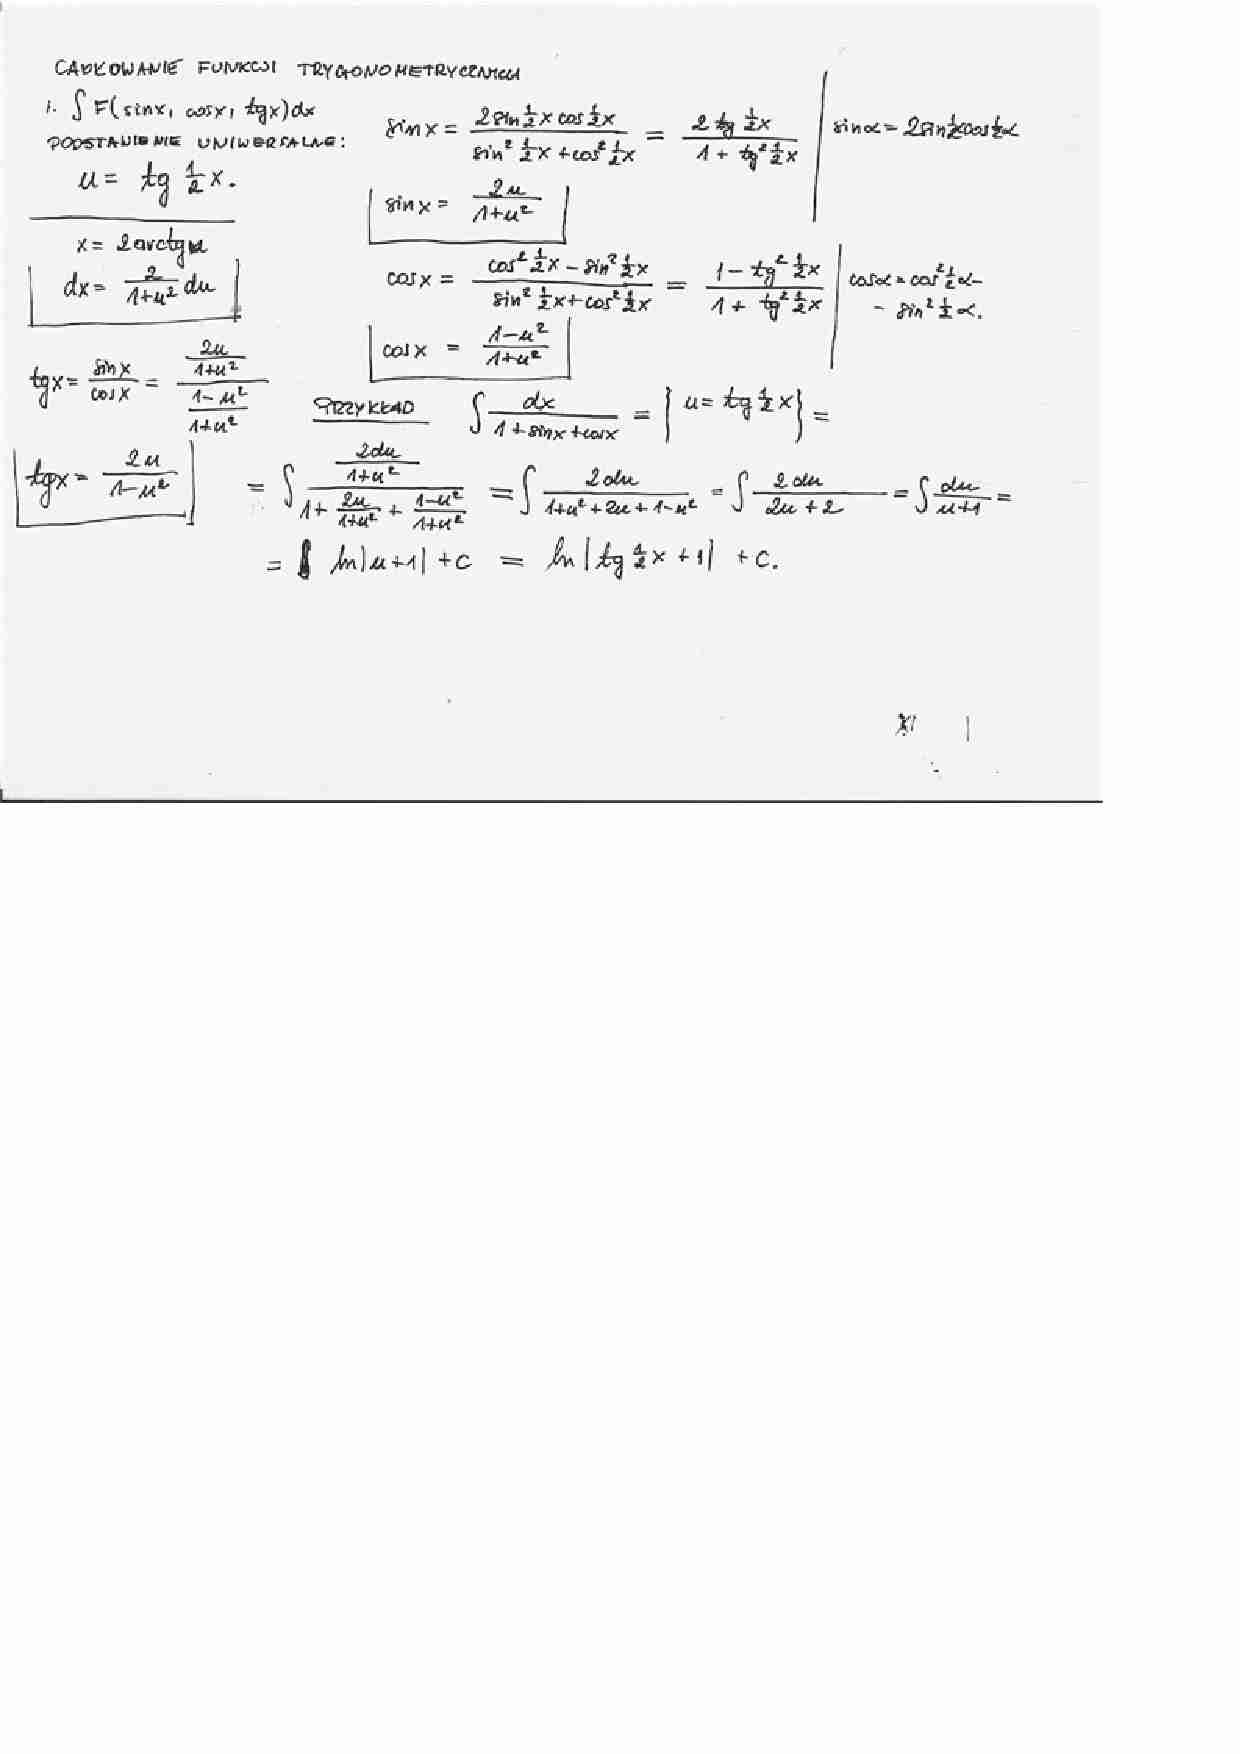 Całkowanie funkcji trygonometrycznej1 - strona 1